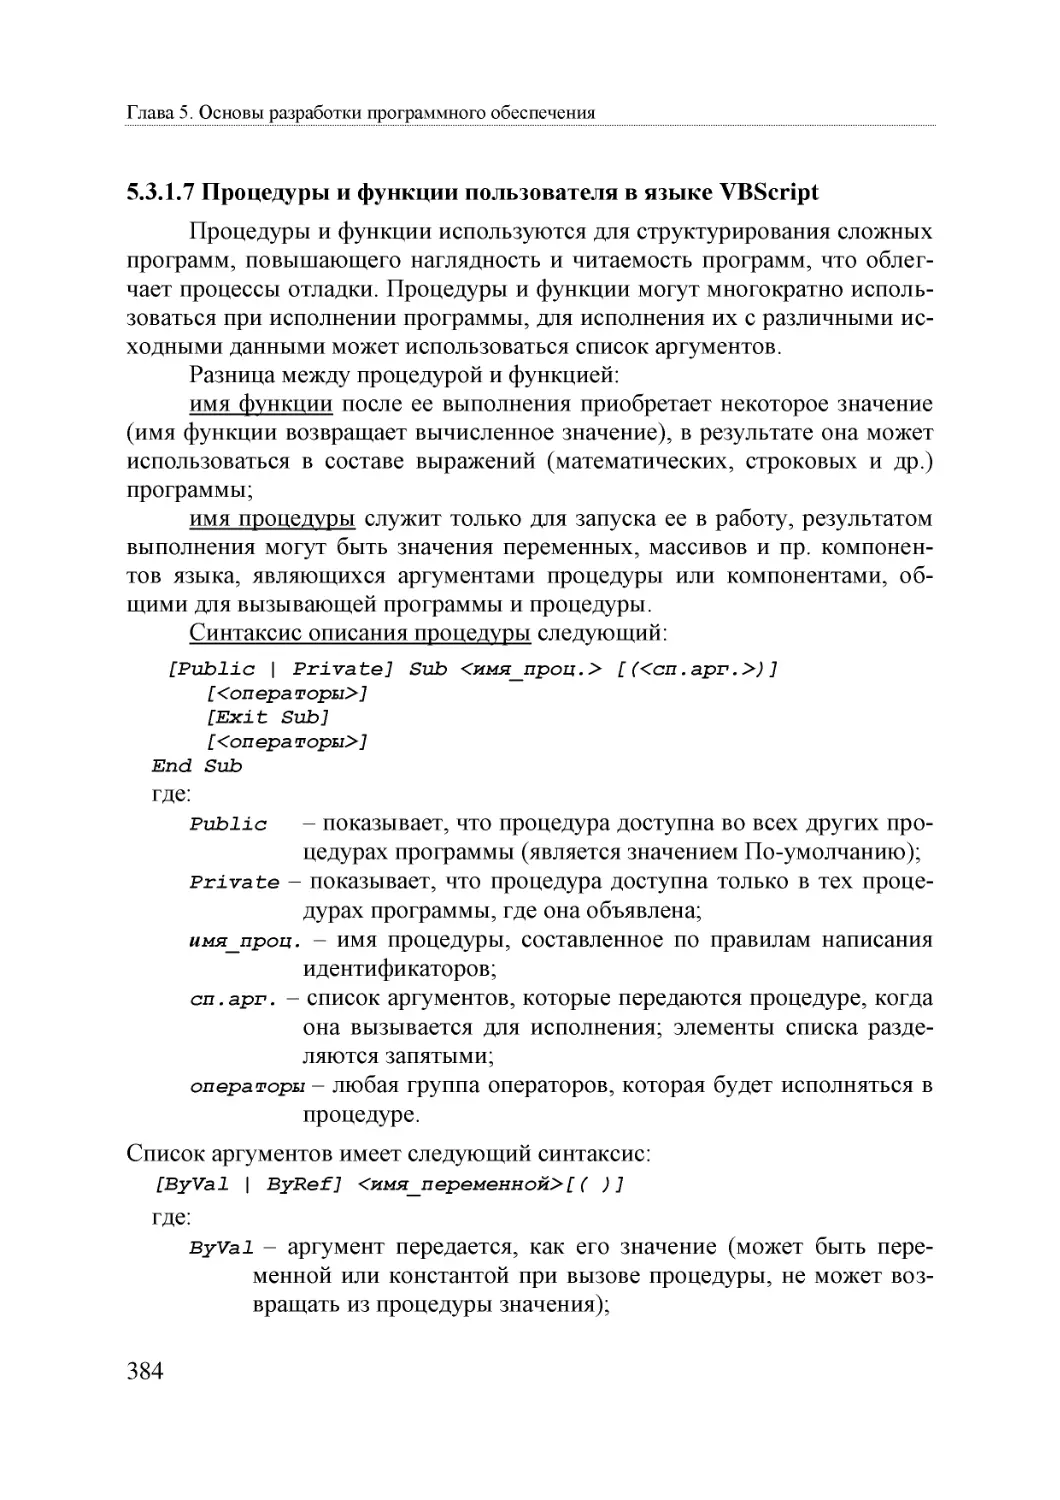 Informatika_Uchebnik_dlya_vuzov_2010 384